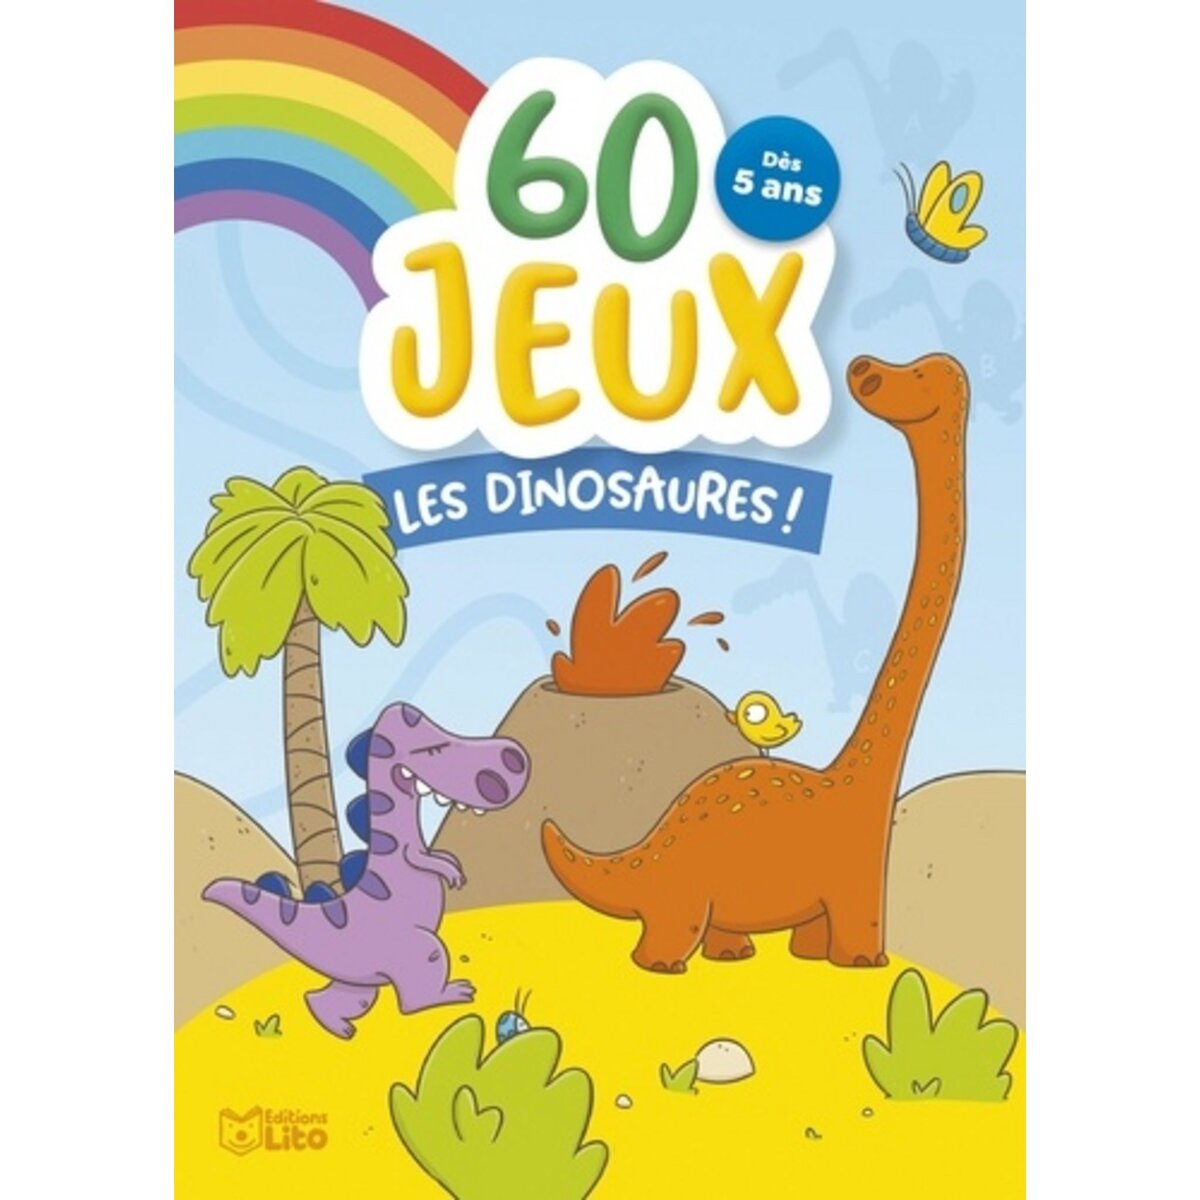  60 JEUX LES DINOSAURES !, Chevalier Amélie